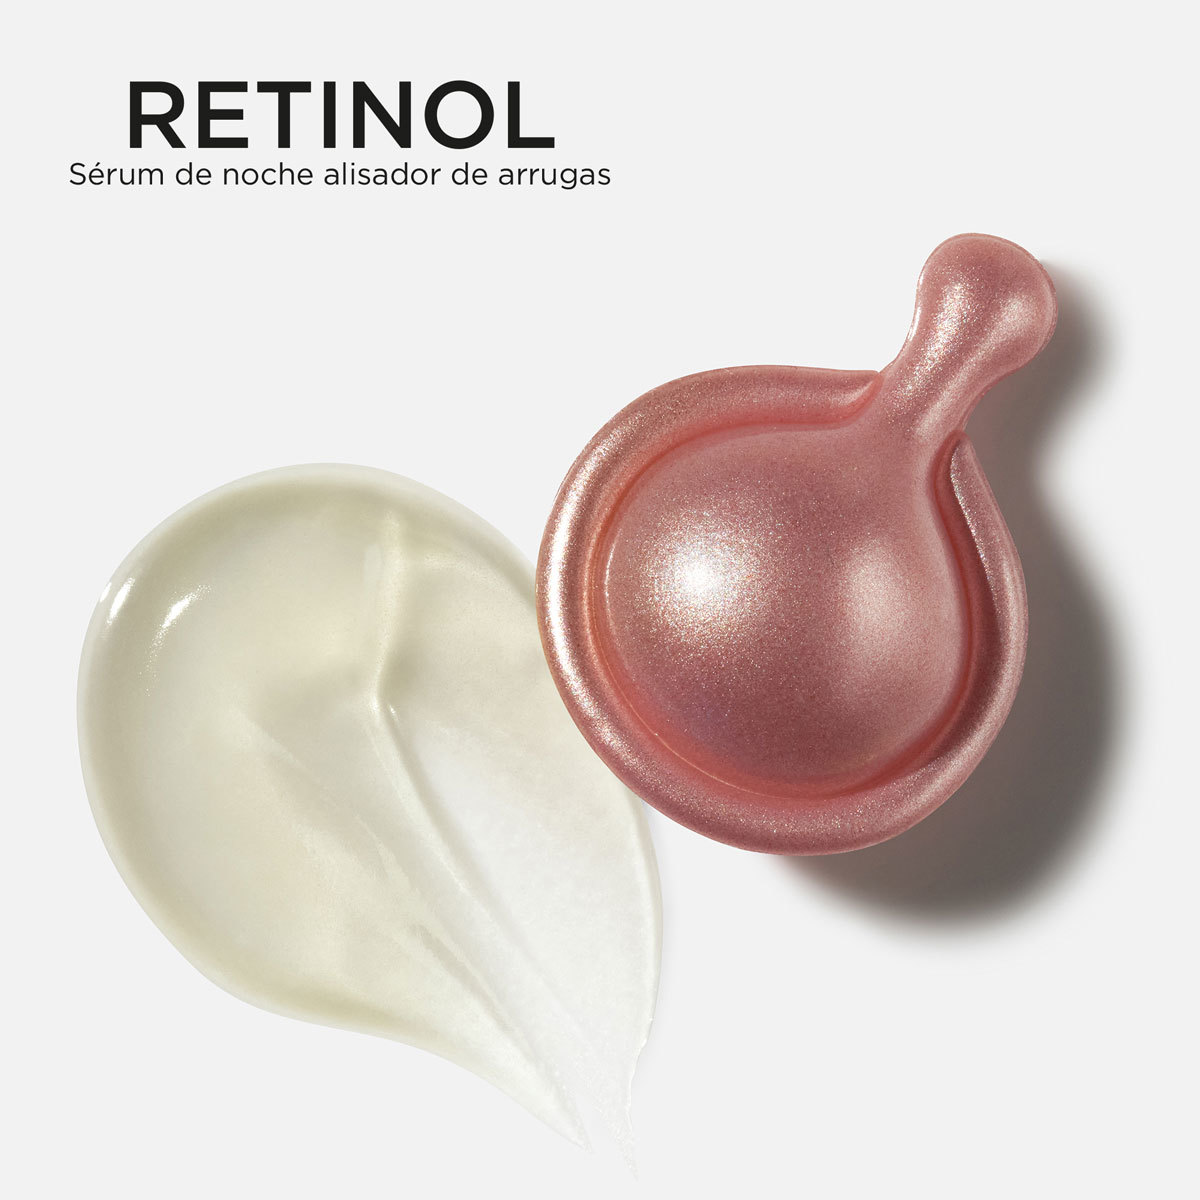 Retinol Ceramide Capsules, de Elizabeth Arden, se presenta en unas prácticas monodosis, que protegen el retinol de la exposición a la luz y al aire.